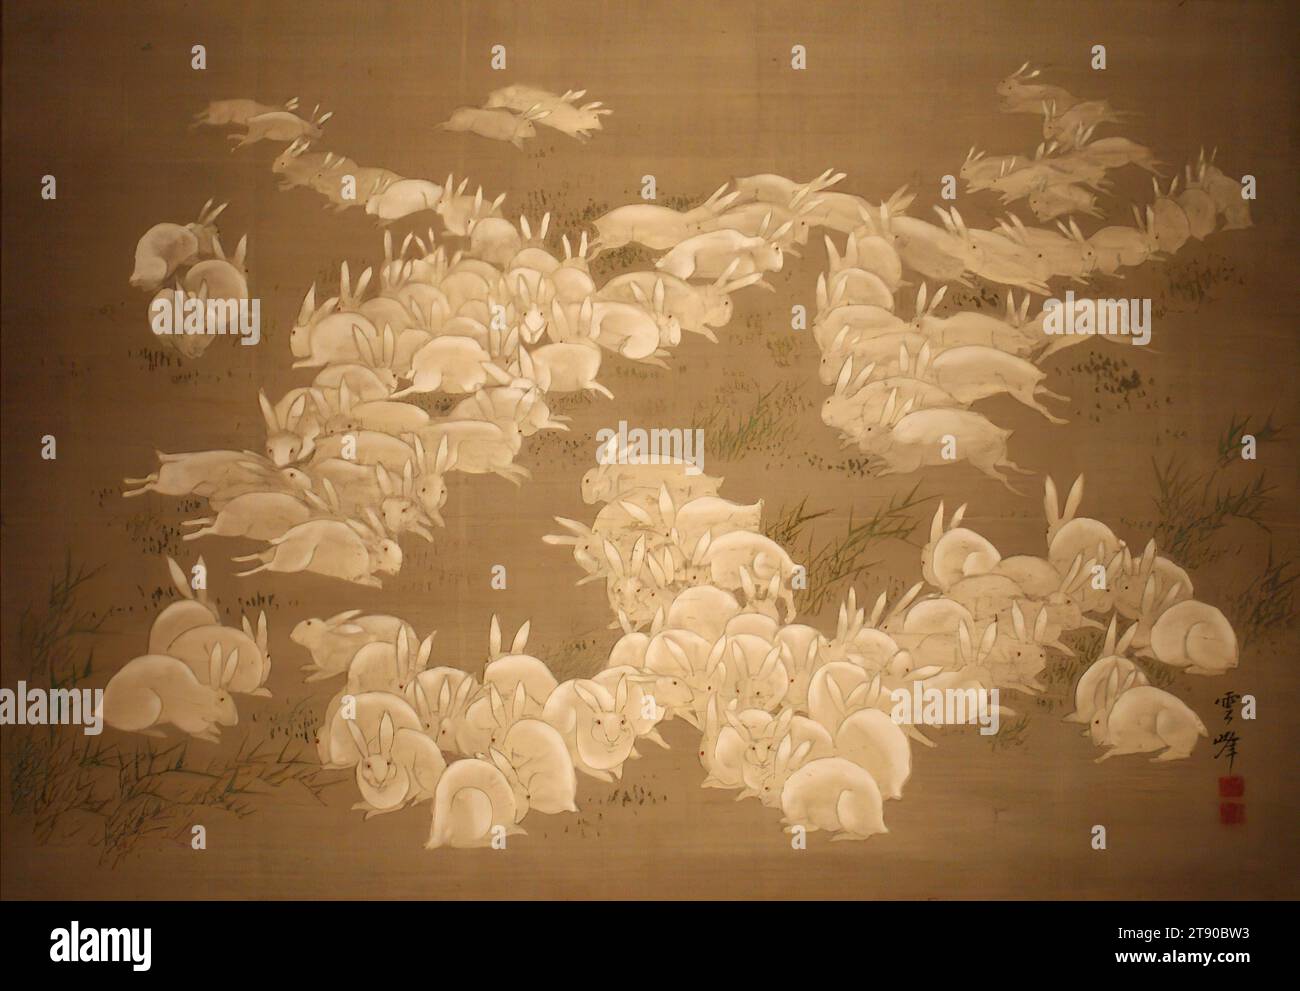 Cent lapins, première moitié du 19e siècle, Ōoka Unpō, japonais, 1765 - 1848, 17 7/8 × 25 11/16 po. (45,4 × 65,25 cm) (image)45 11/16 × 28 7/16 po (116,05 × 72,23 cm) (monture, sans rouleau), encre et couleurs sur soie, Japon, 19e siècle Banque D'Images